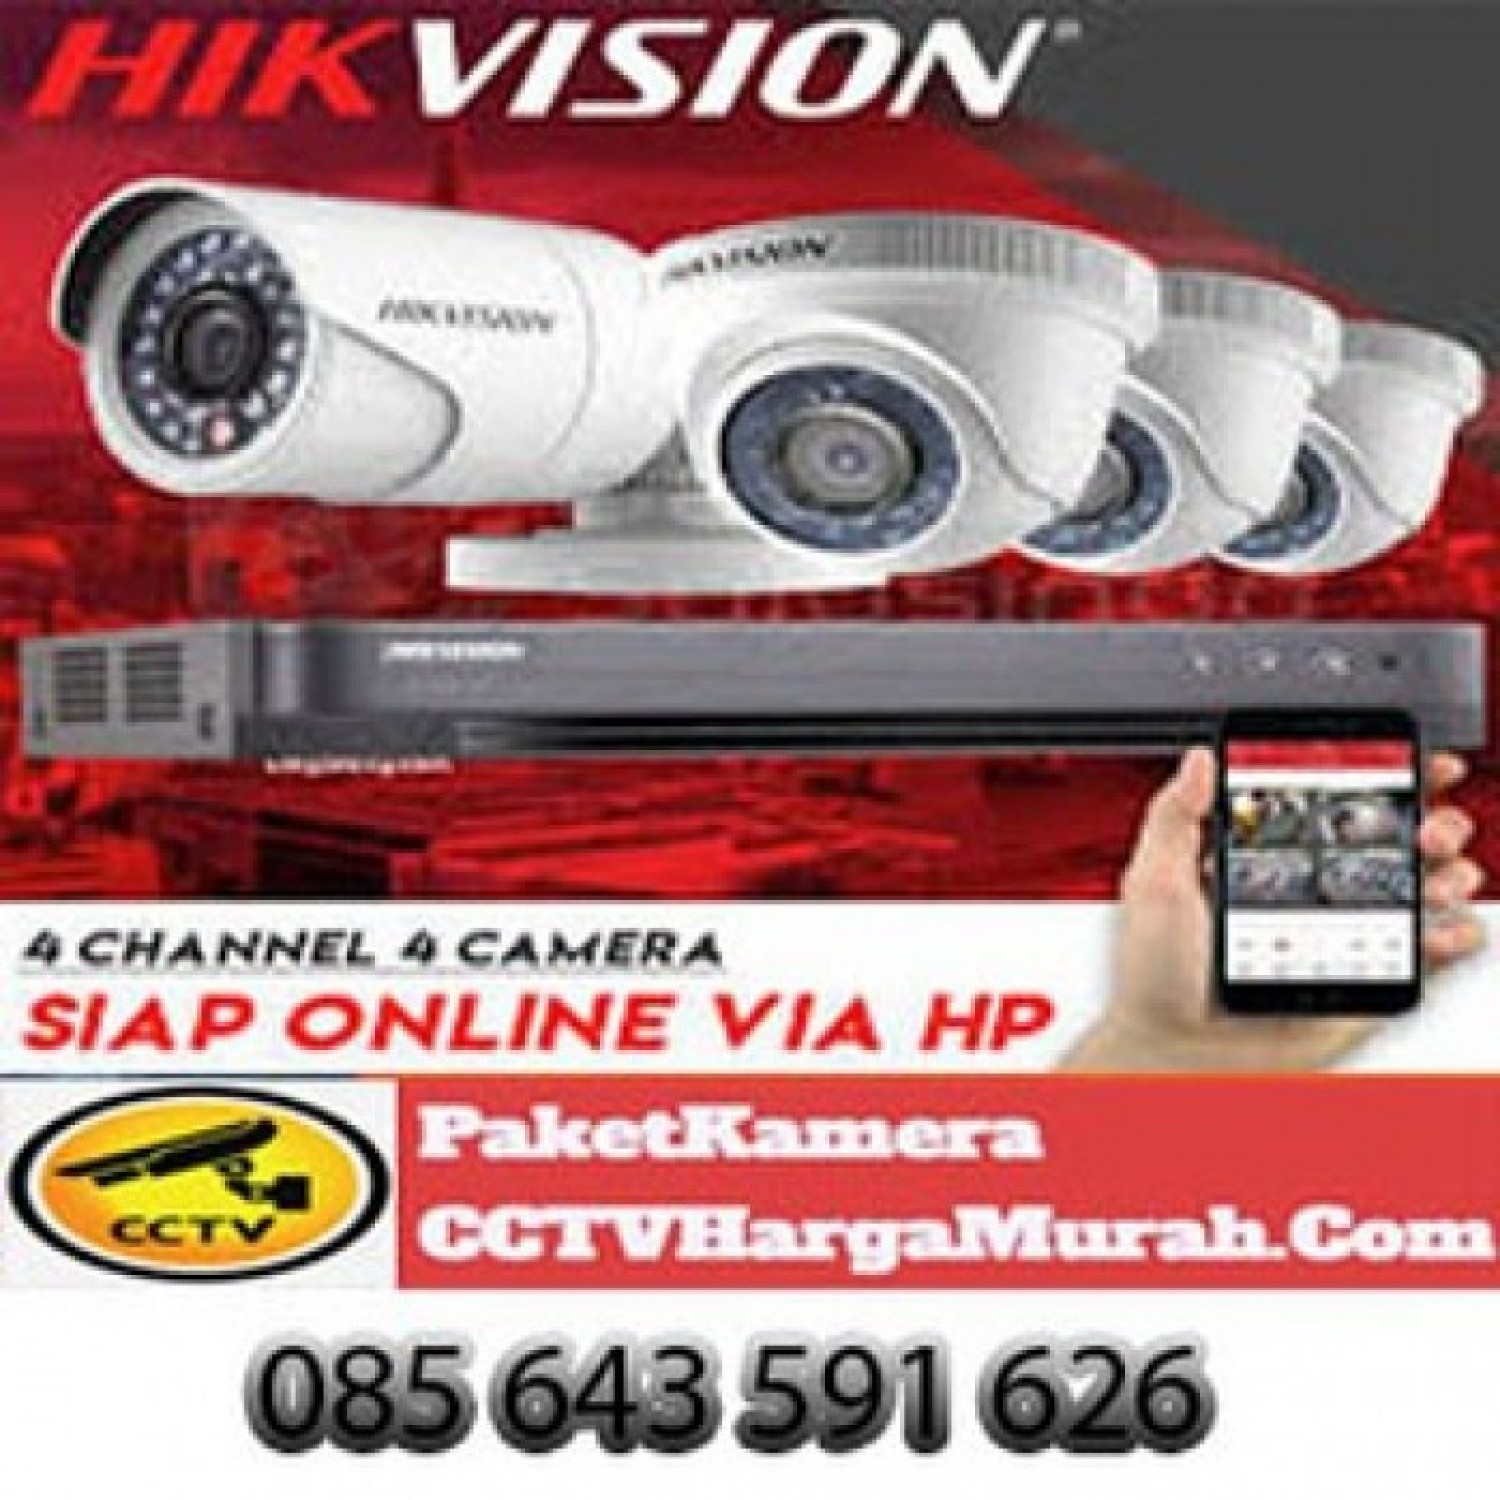 Jasa Pasang CCTV MALANG #1 Cepat 085641172100